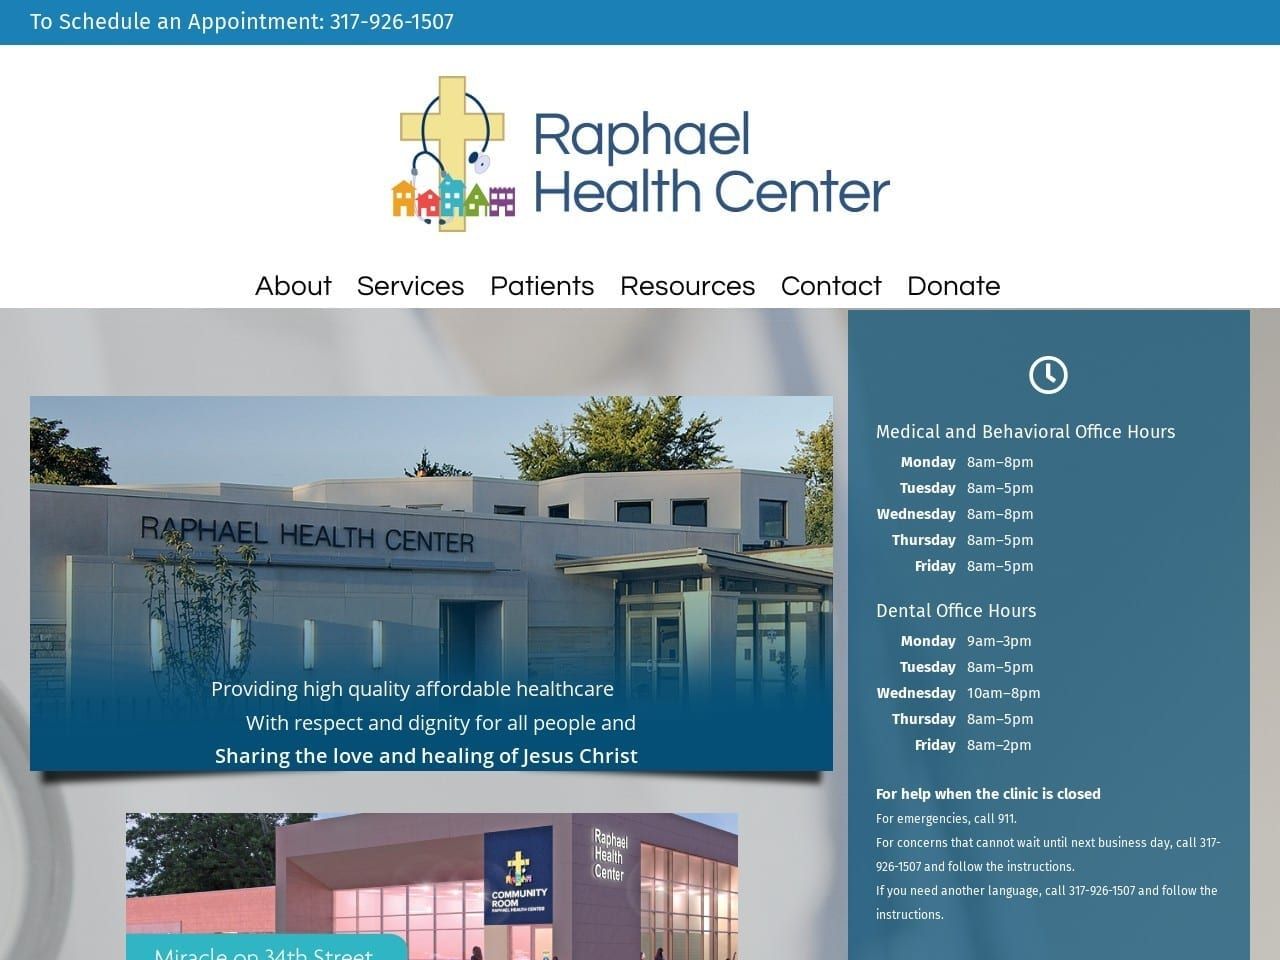 Raphael Health Center Stephens Rhonda A DDS Website Screenshot from raphaelhc.org